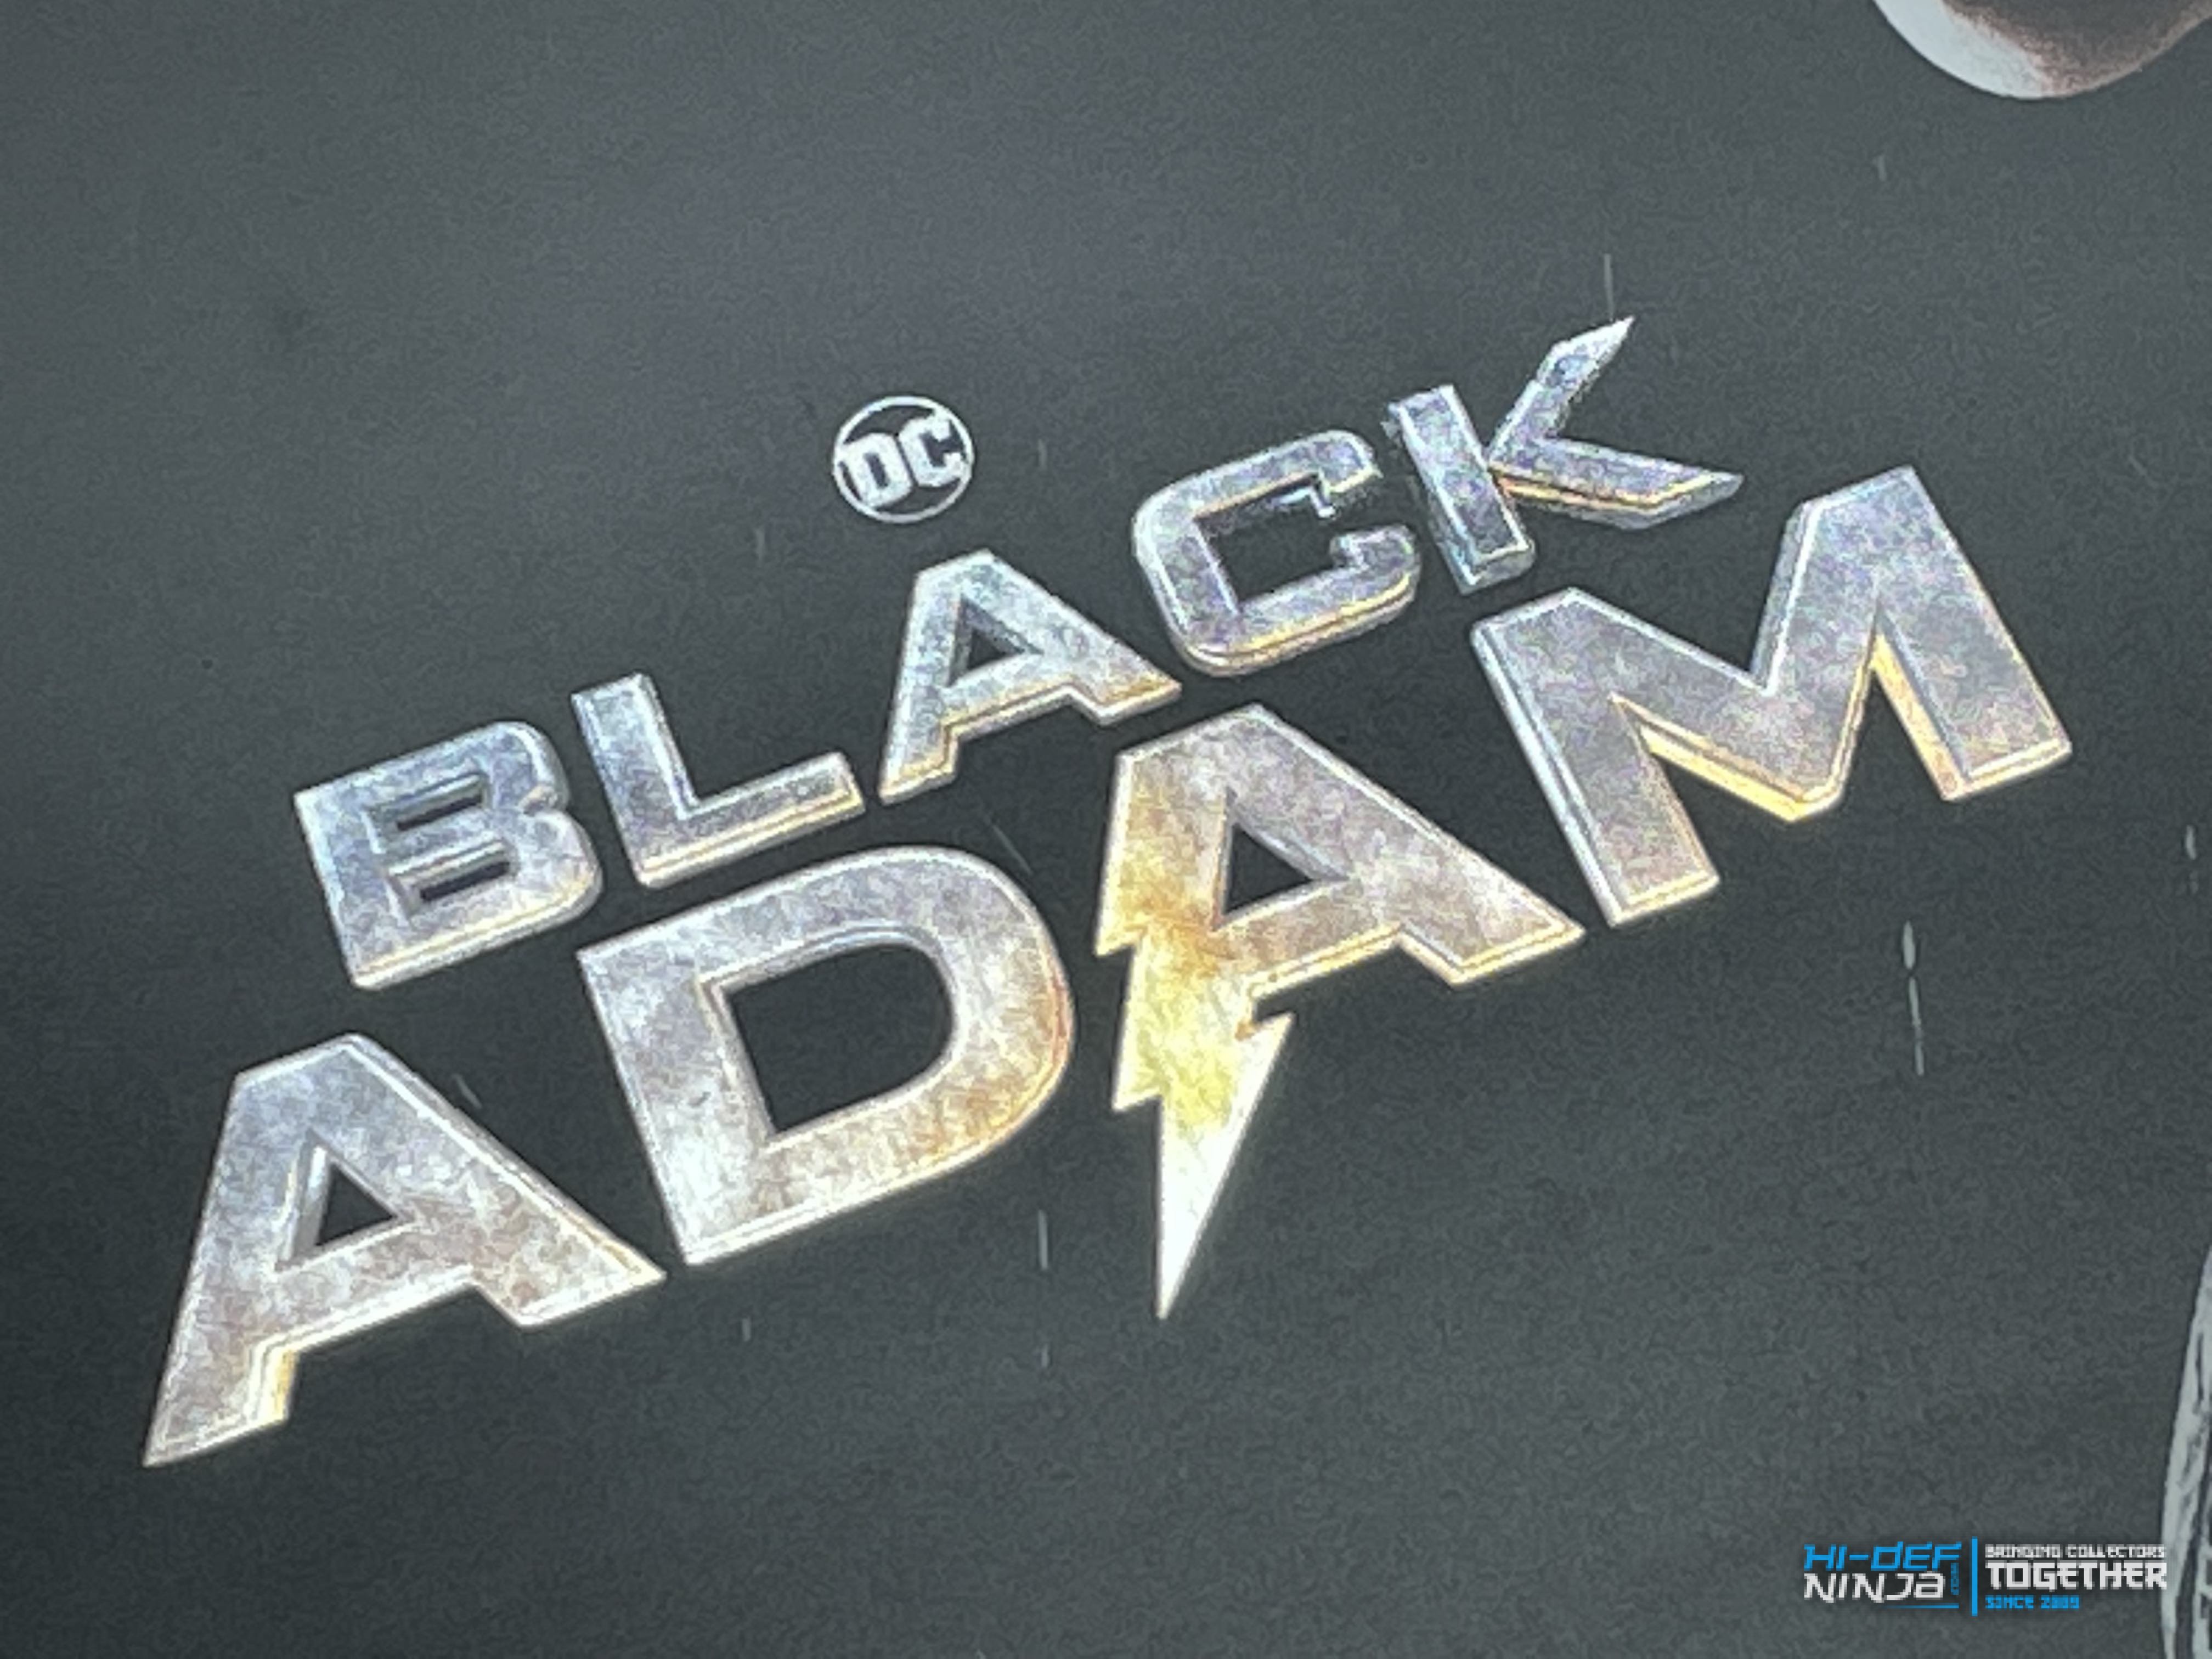 BlackAdam_HMV_title2.jpg